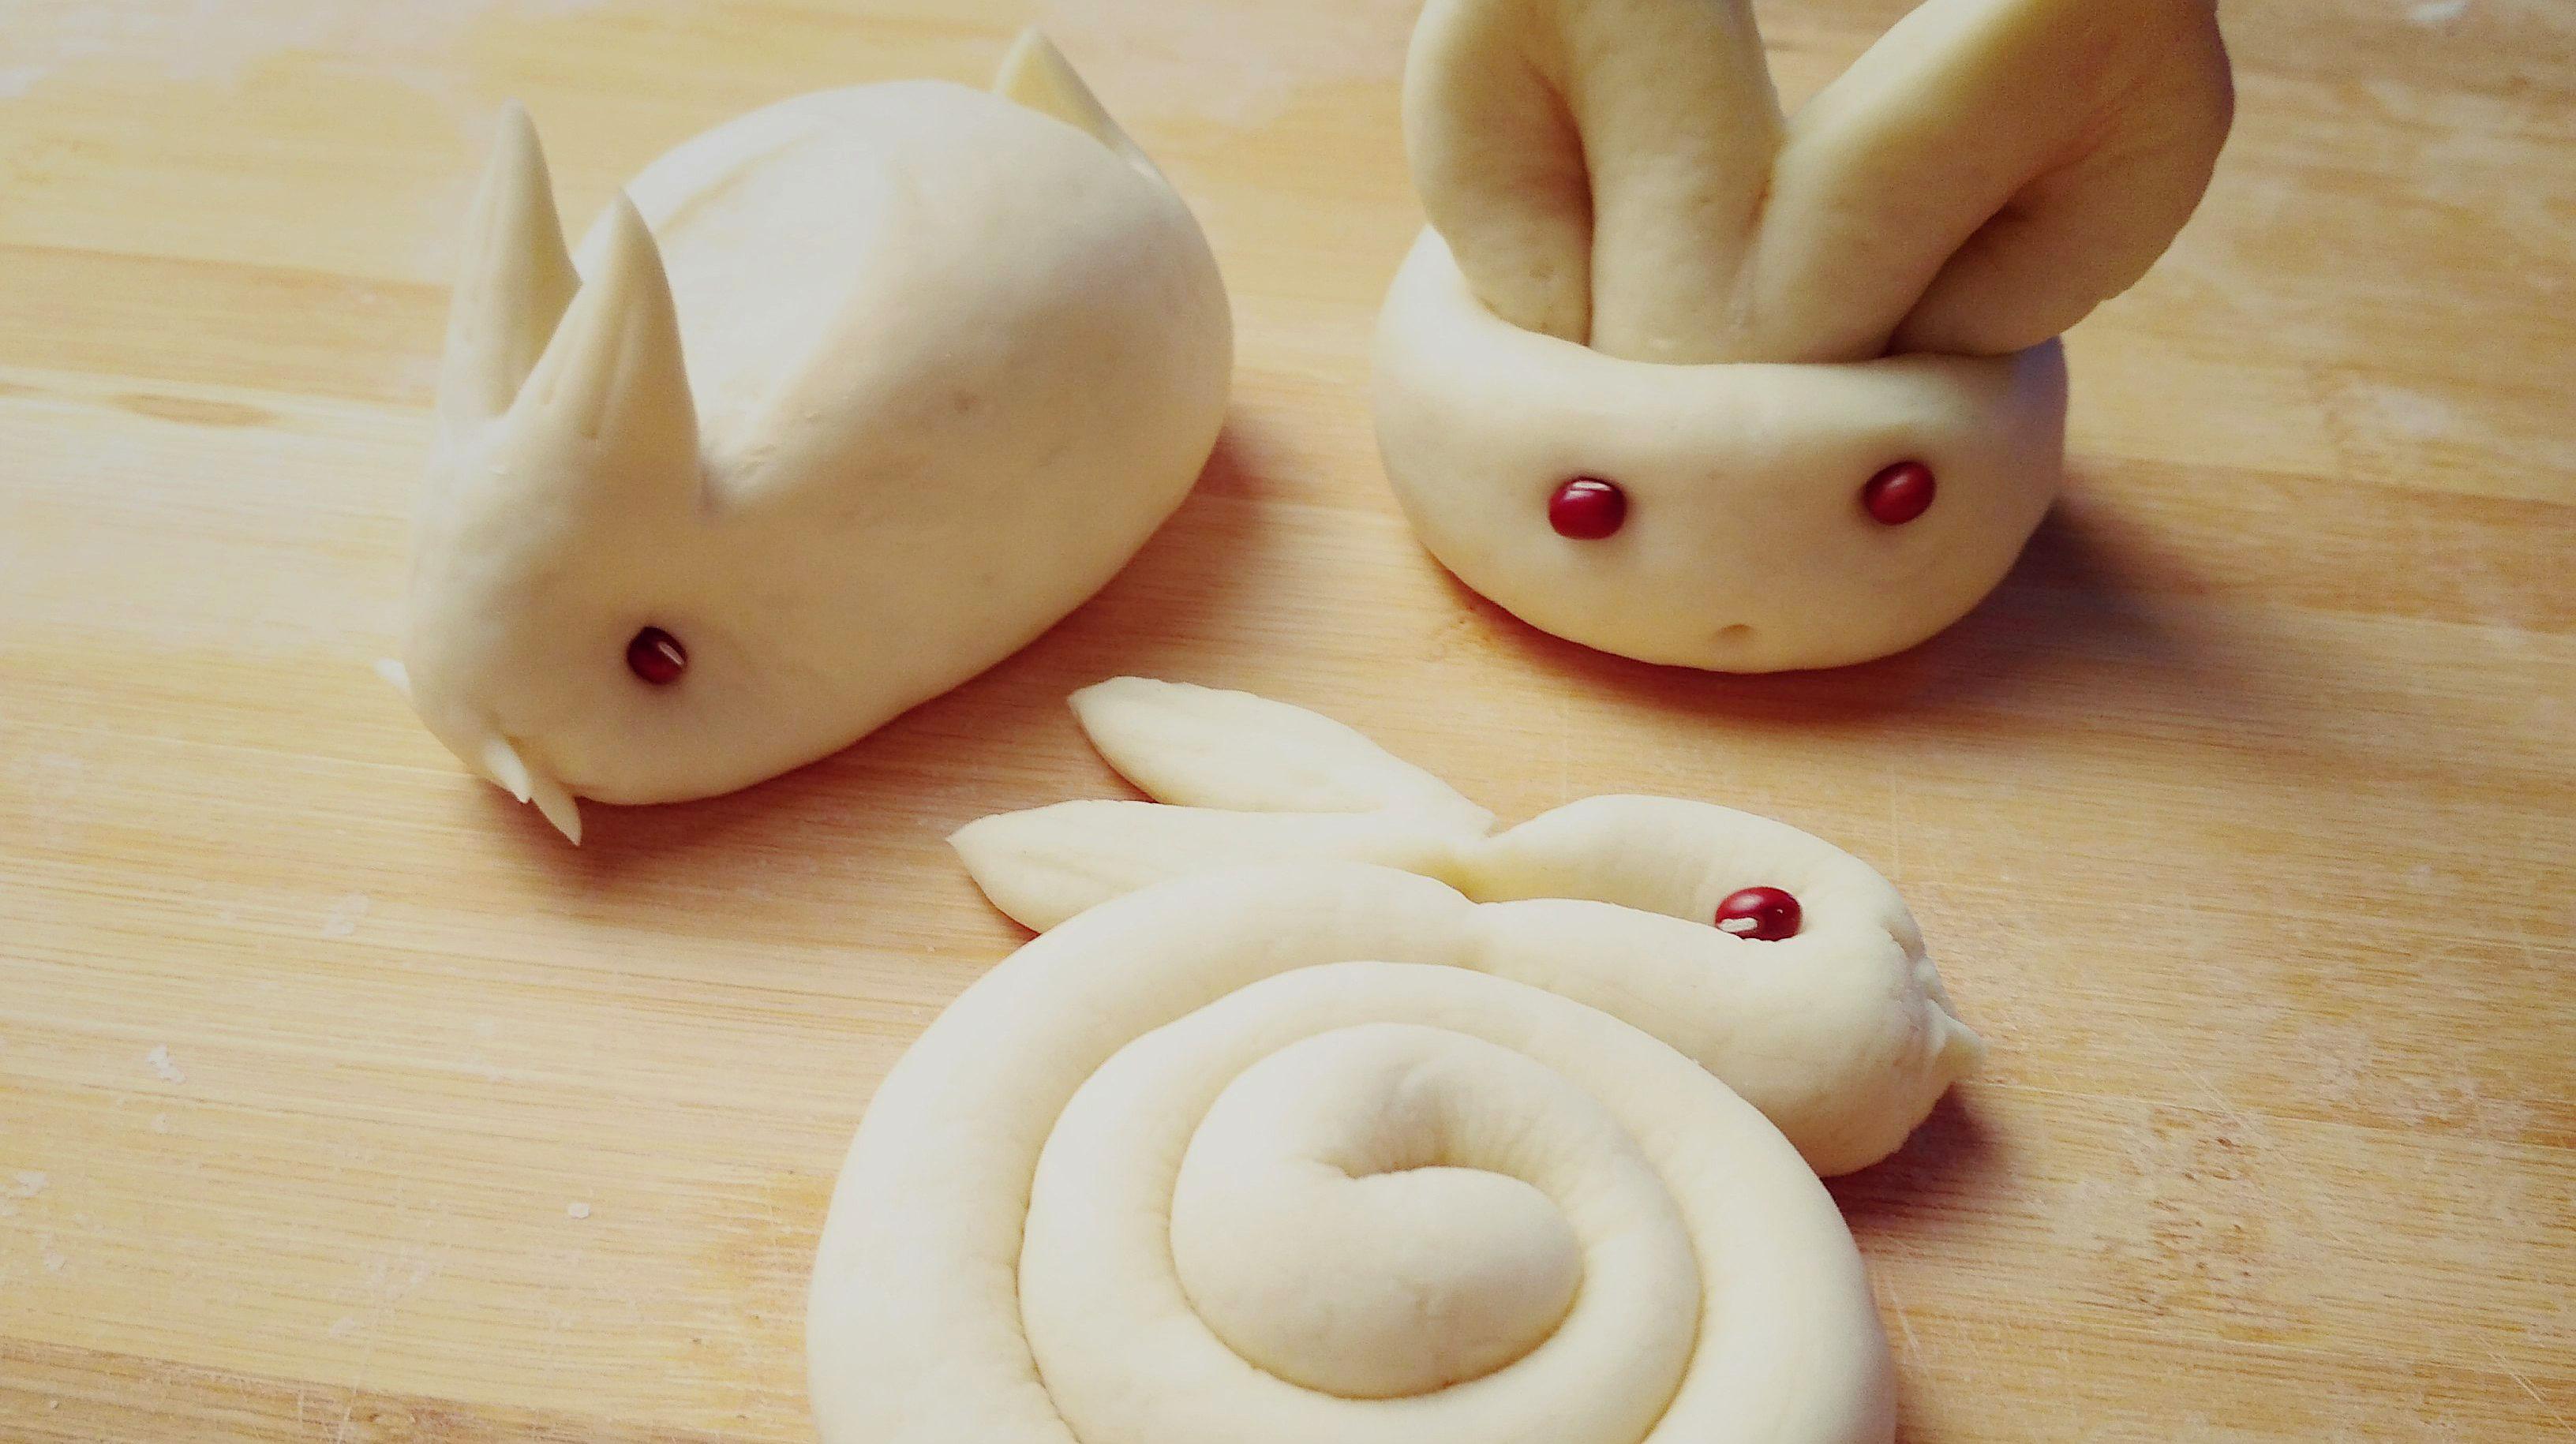 分享3款面食小兔子的做法,春节蒸馒头时做几个吧,孩子一定喜欢